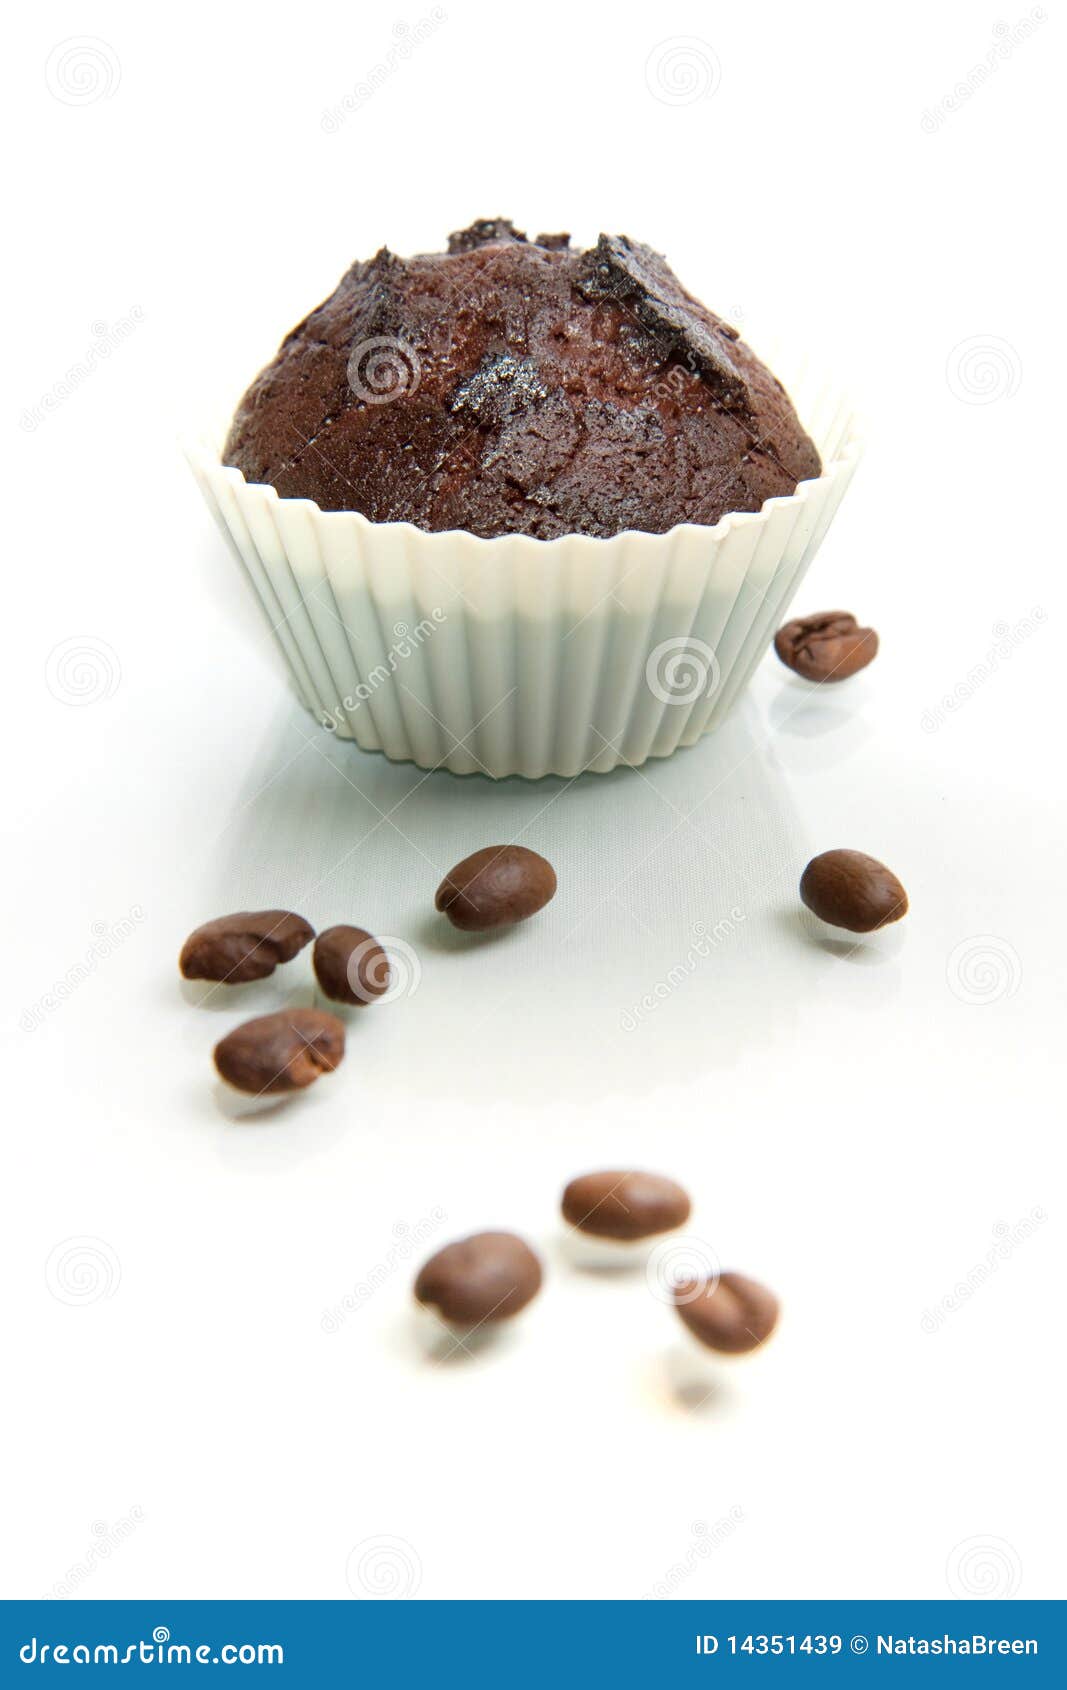 Schokoladen-Muffin Mit Kaffeebohnen Stockbild - Bild von mittagessen ...